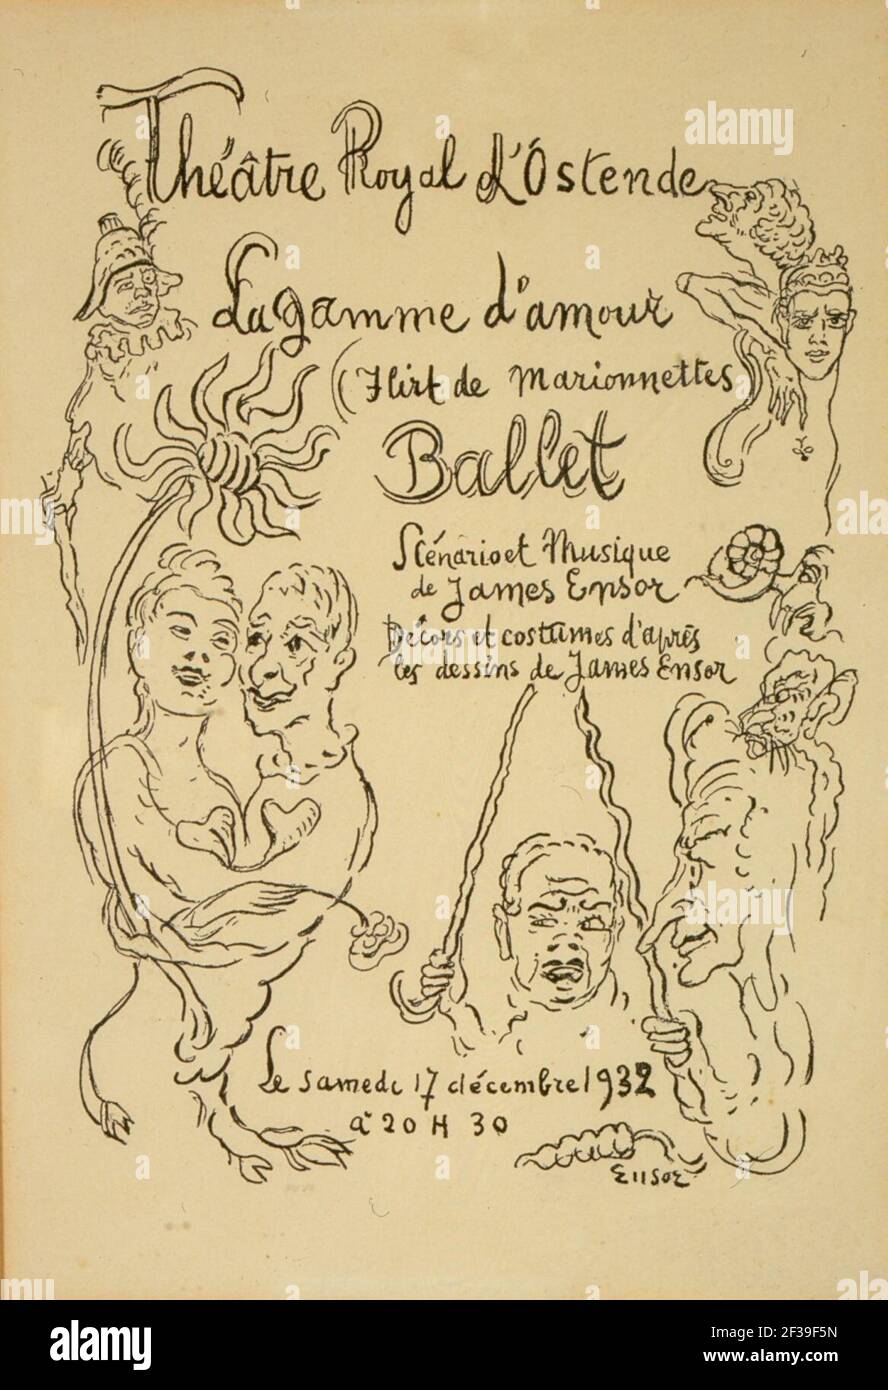 Programma van de opvoering van het ballet ''La Gamme d'Amour'' - Schouwburg Oostende 17 december 1932, James Ensor, Mu.ZEE Oostende, SM002264a. Stock Photo